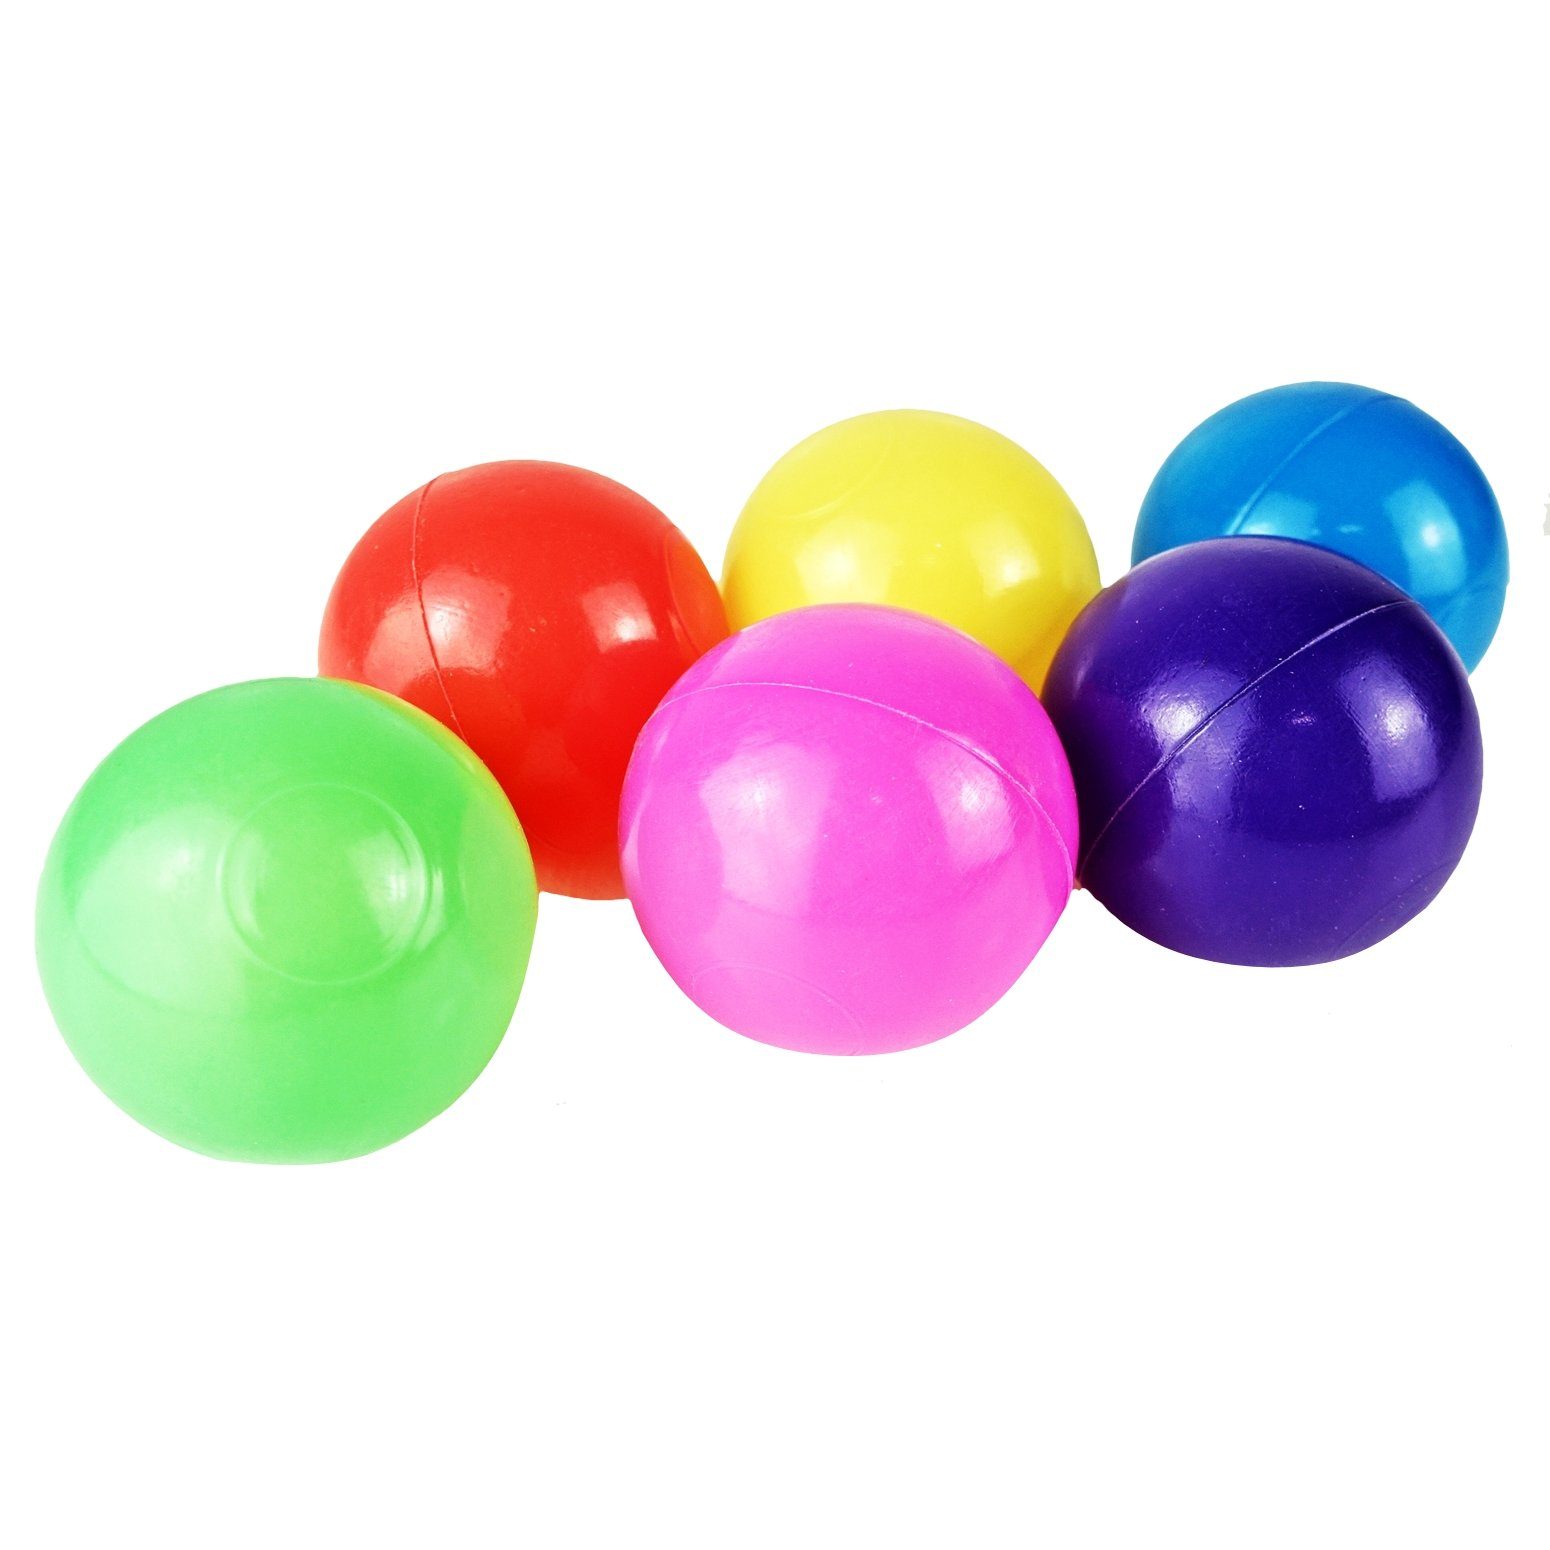 2700 - Bällebad Bällebad-Bälle bunte Ball 5,5cm BAYLI Bälle Farben Softball Ø Mischung -